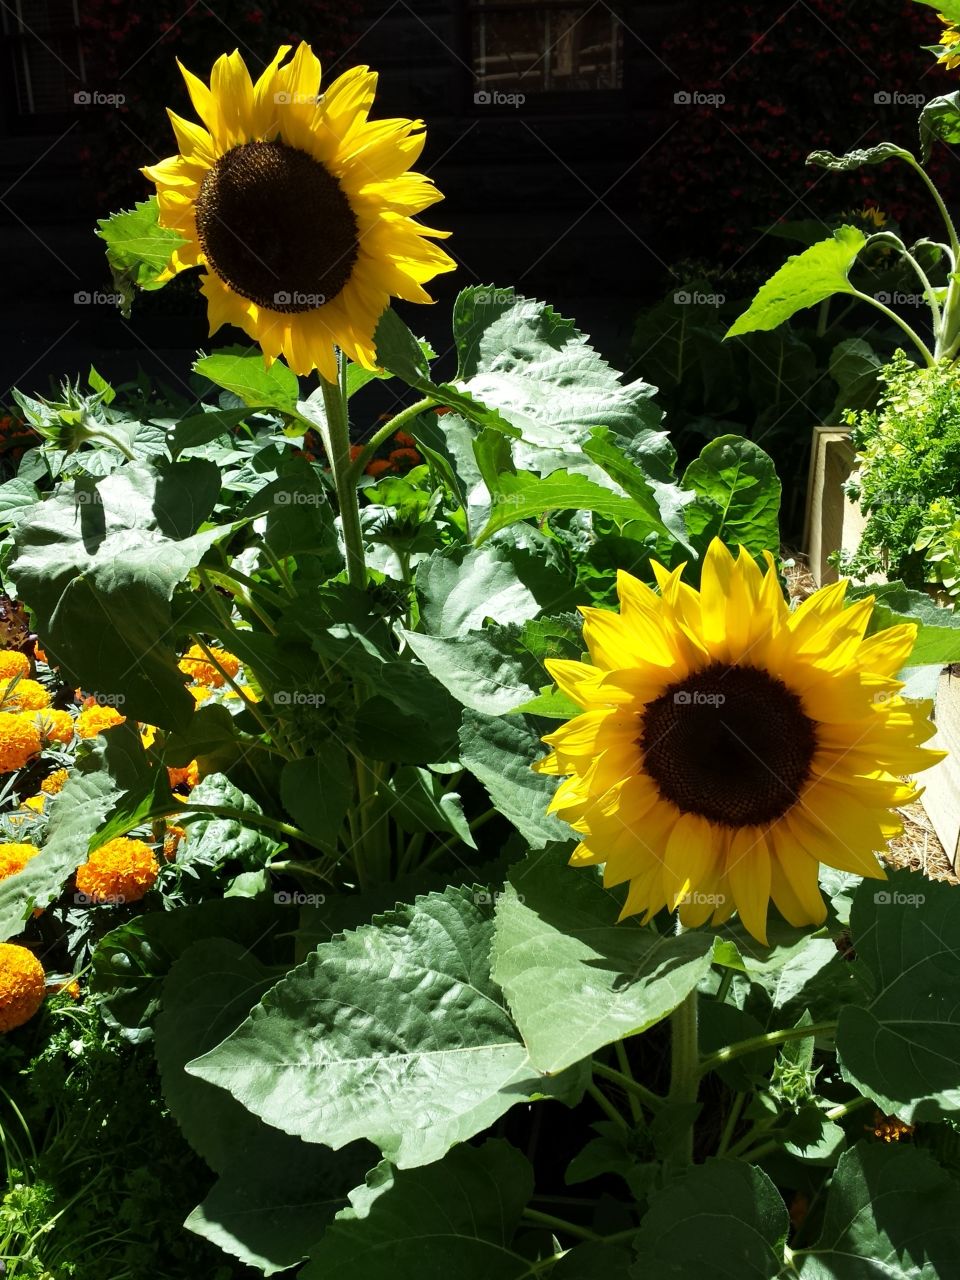 City Sunflowers